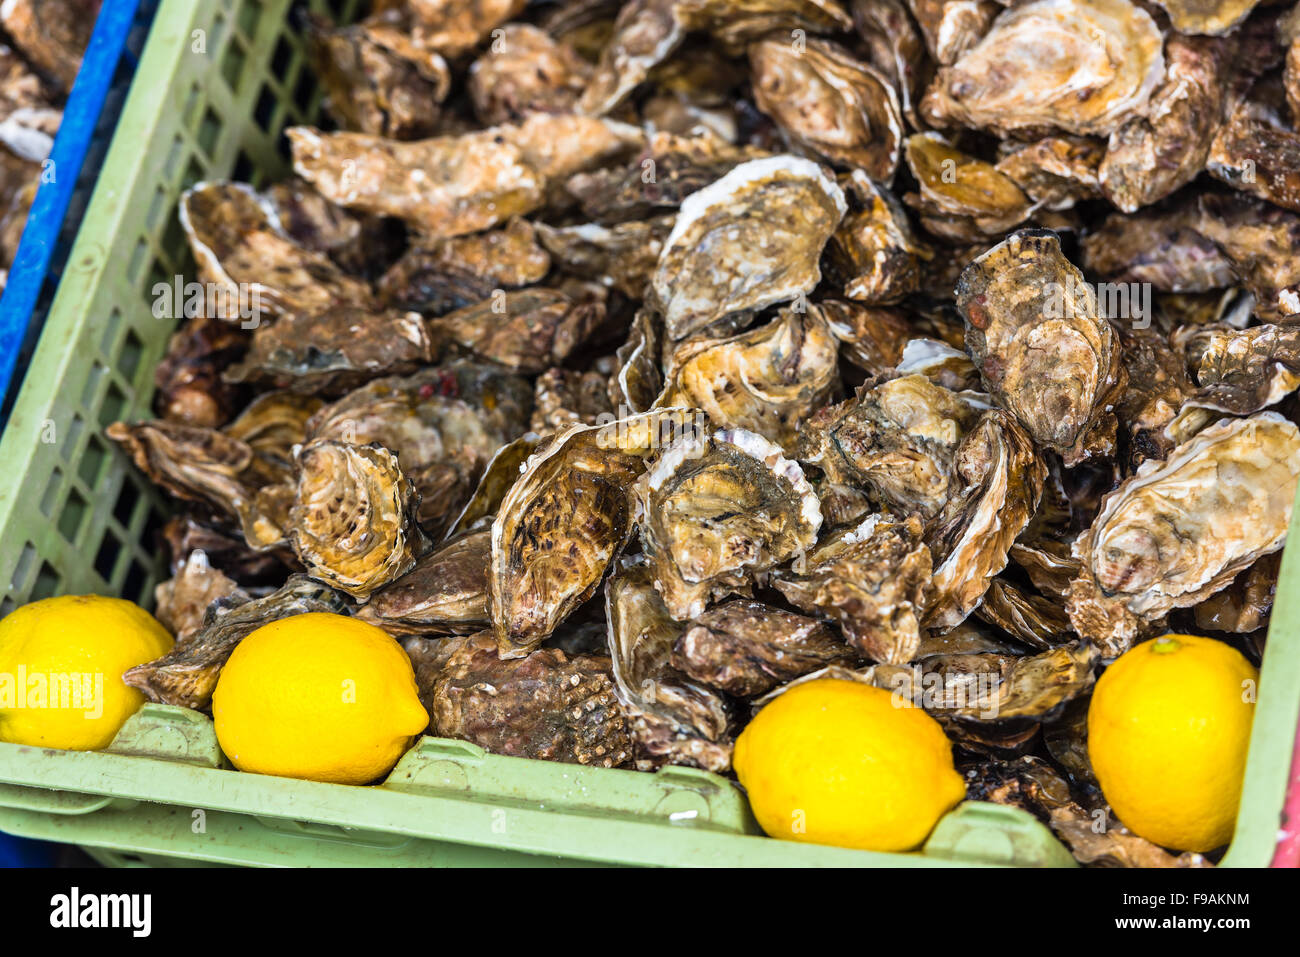 Marché des huîtres à Cancale, Bretagne, France. Tourné avec un focus sélectif Banque D'Images